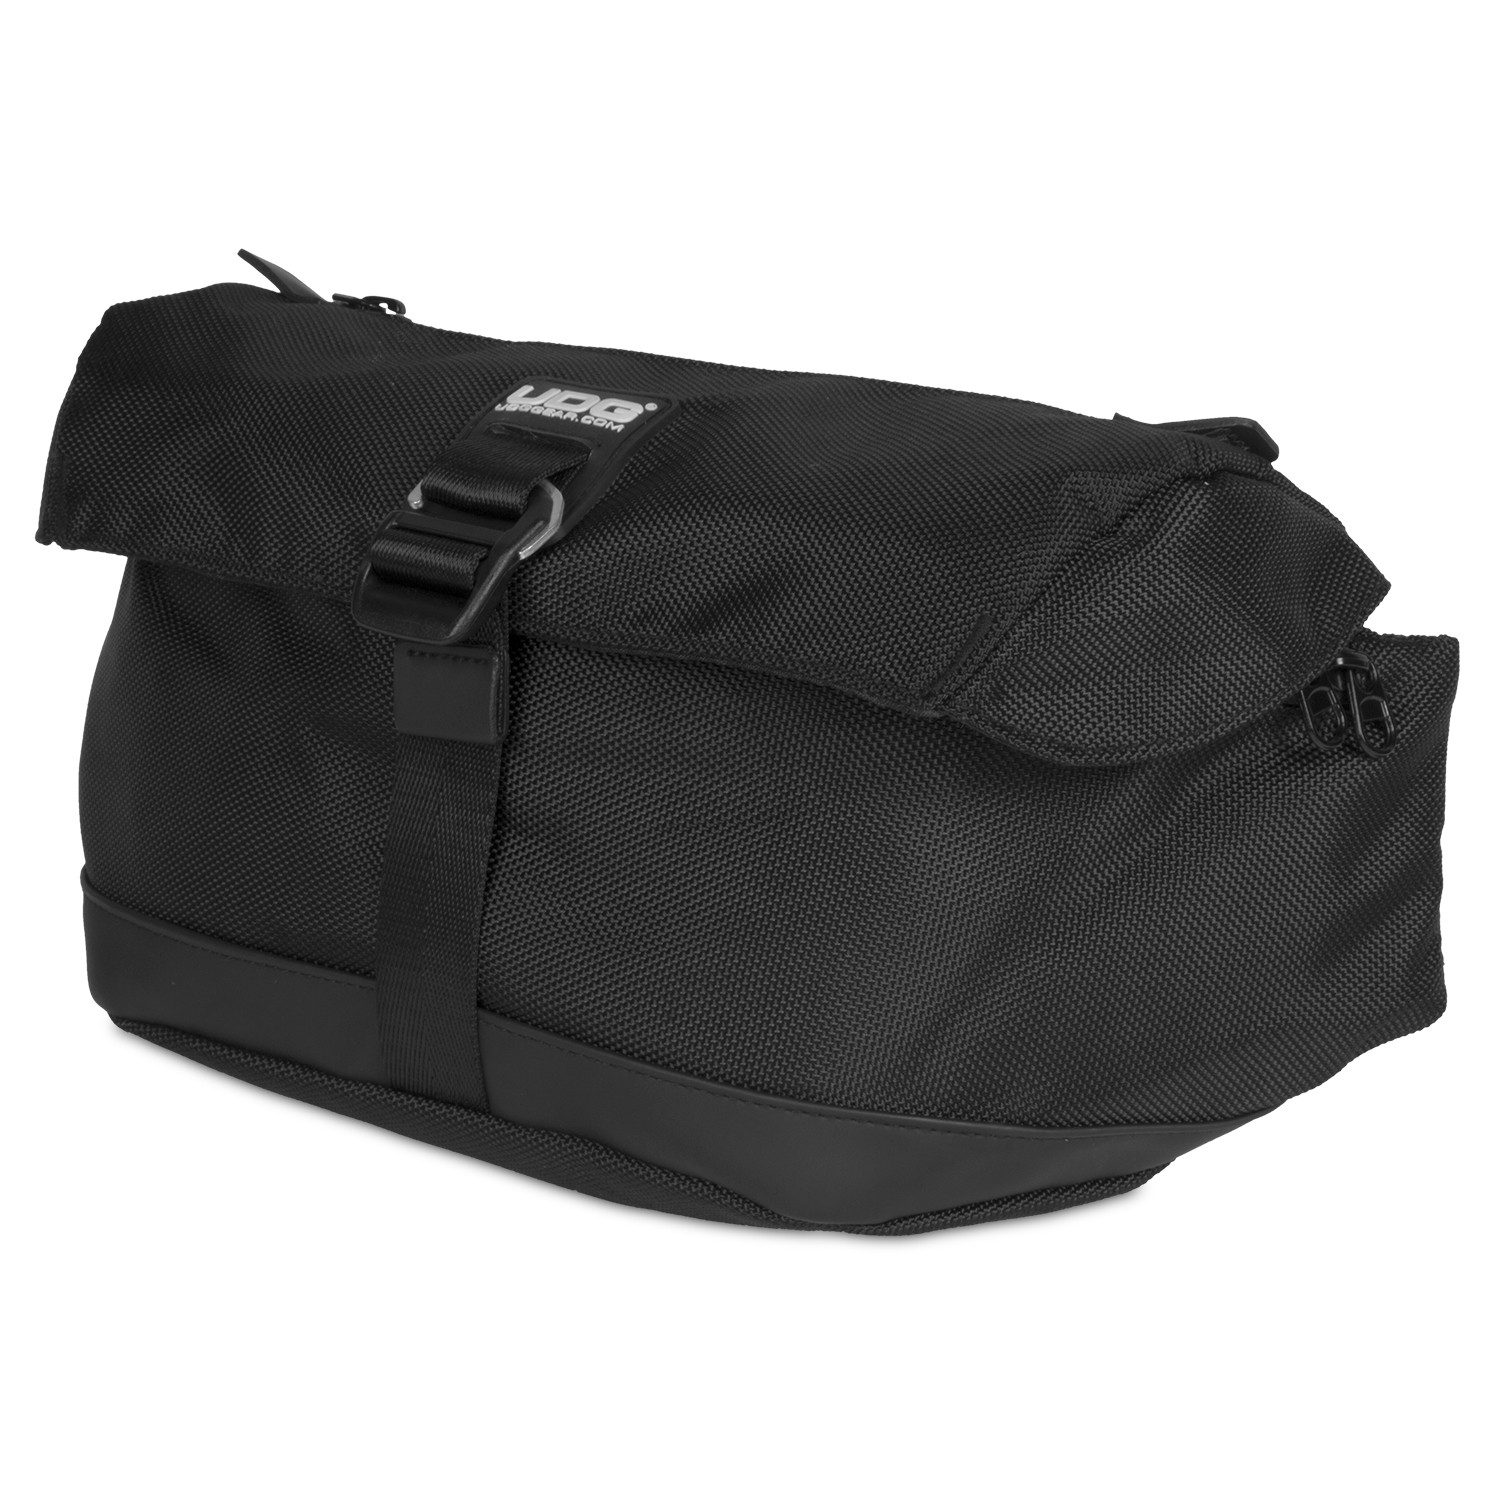 UDG Ultimate Waist Bag Black по цене 6 750 ₽